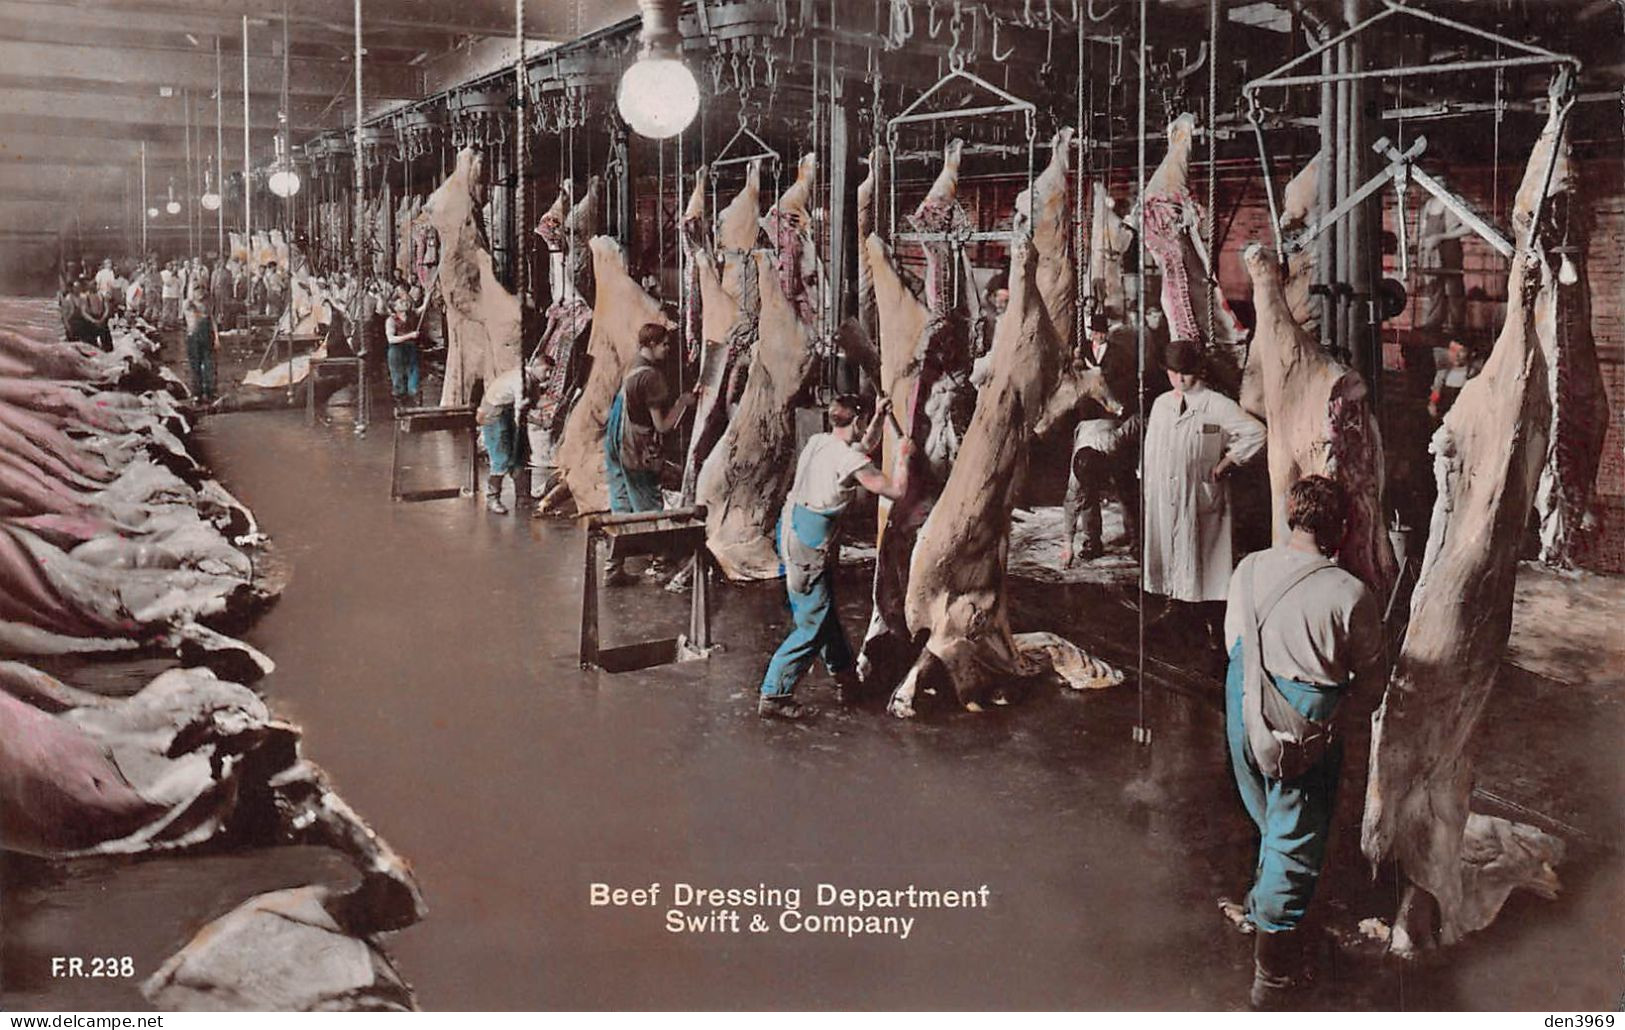 Etats-Unis - CHICAGO - Swift & Company, Beef Dressing Department - Abattoir, Boucherie - Timbre Neuf Poinçonné (2 Scans) - Chicago